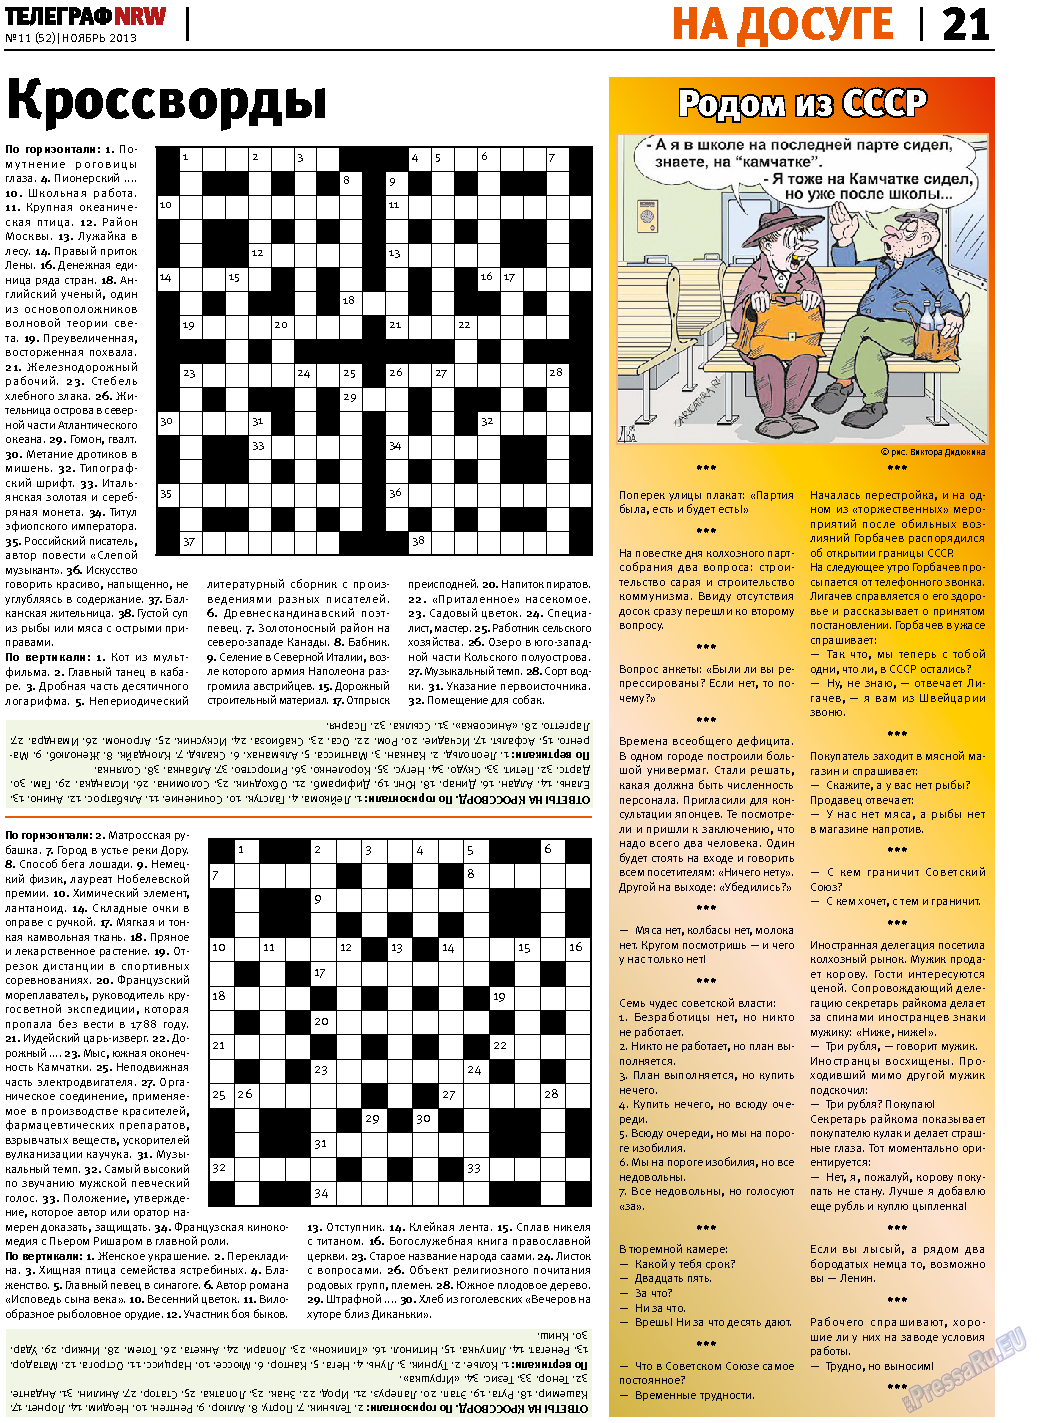 Телеграф NRW (газета). 2013 год, номер 11, стр. 21